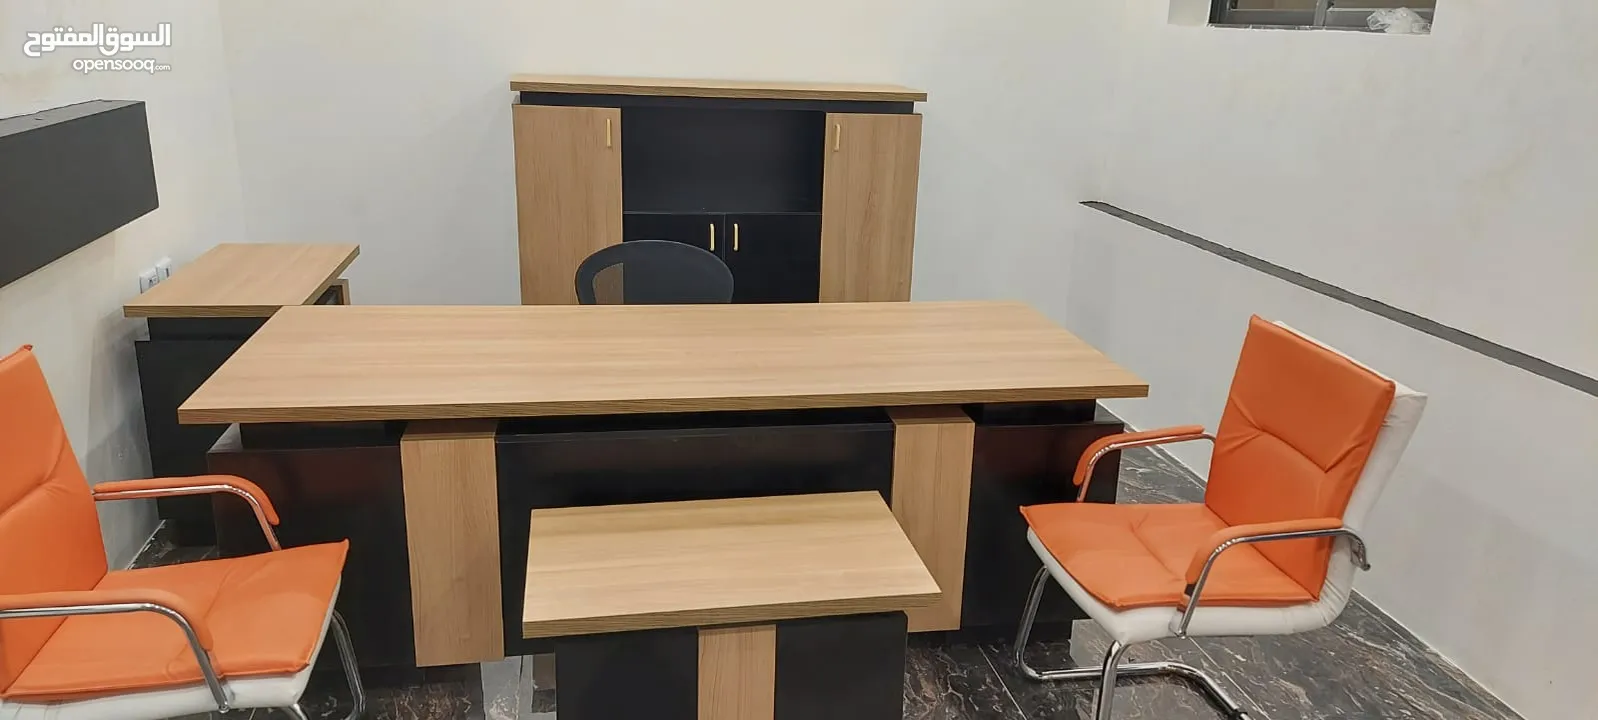 طقم مكتب مدير قياس2م مع خزانة خلفية وجانبية وطاولة قهوة